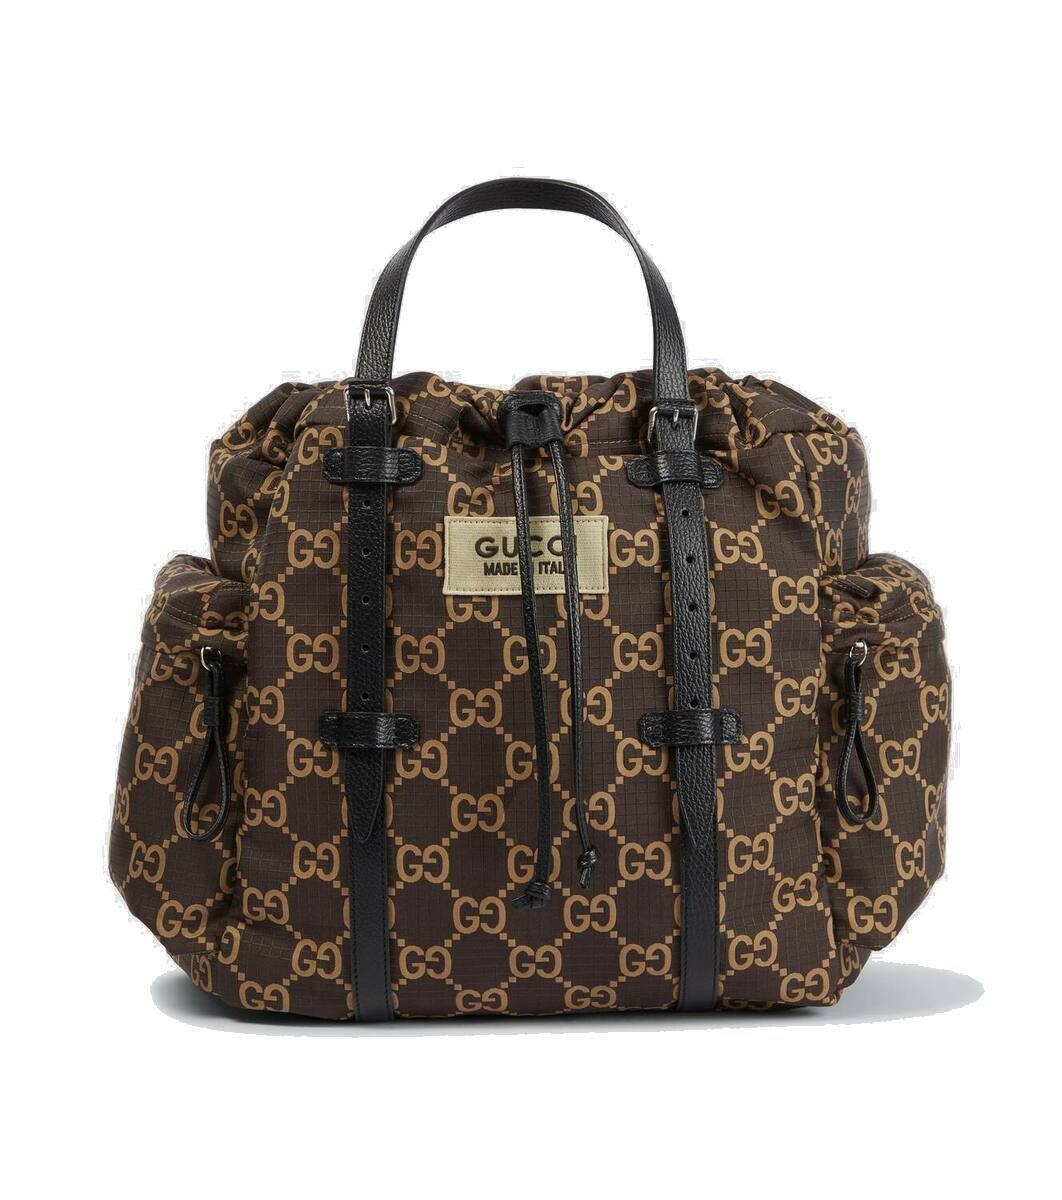 Photo: Gucci GG ripstop tote bag